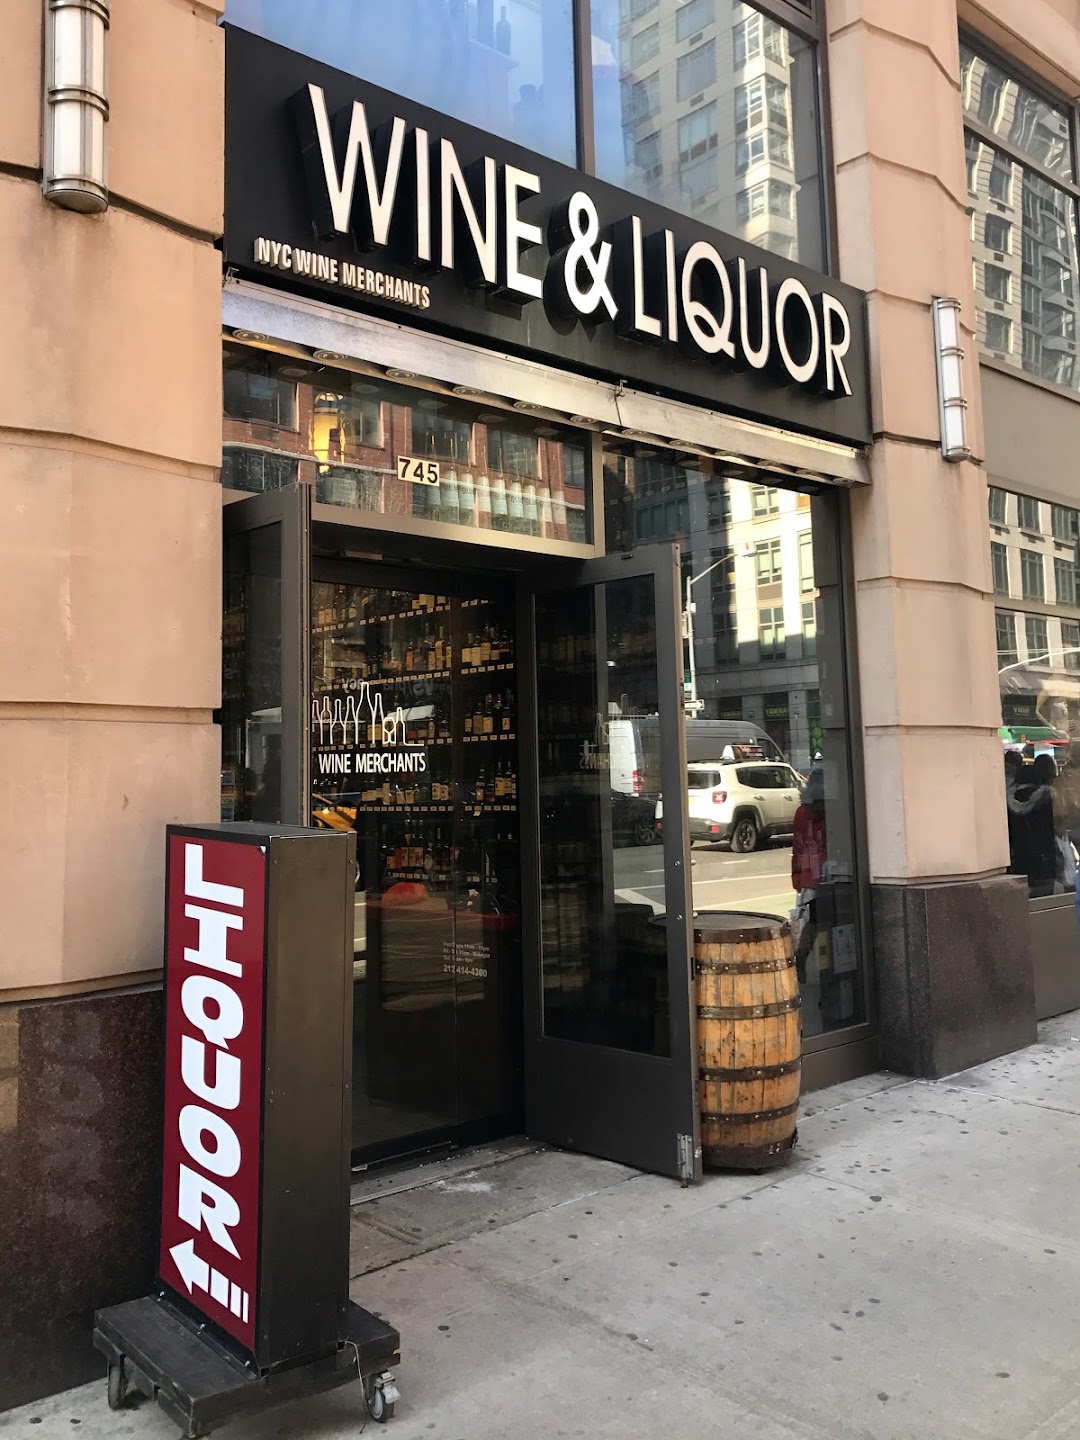 NYC Wine Merchants